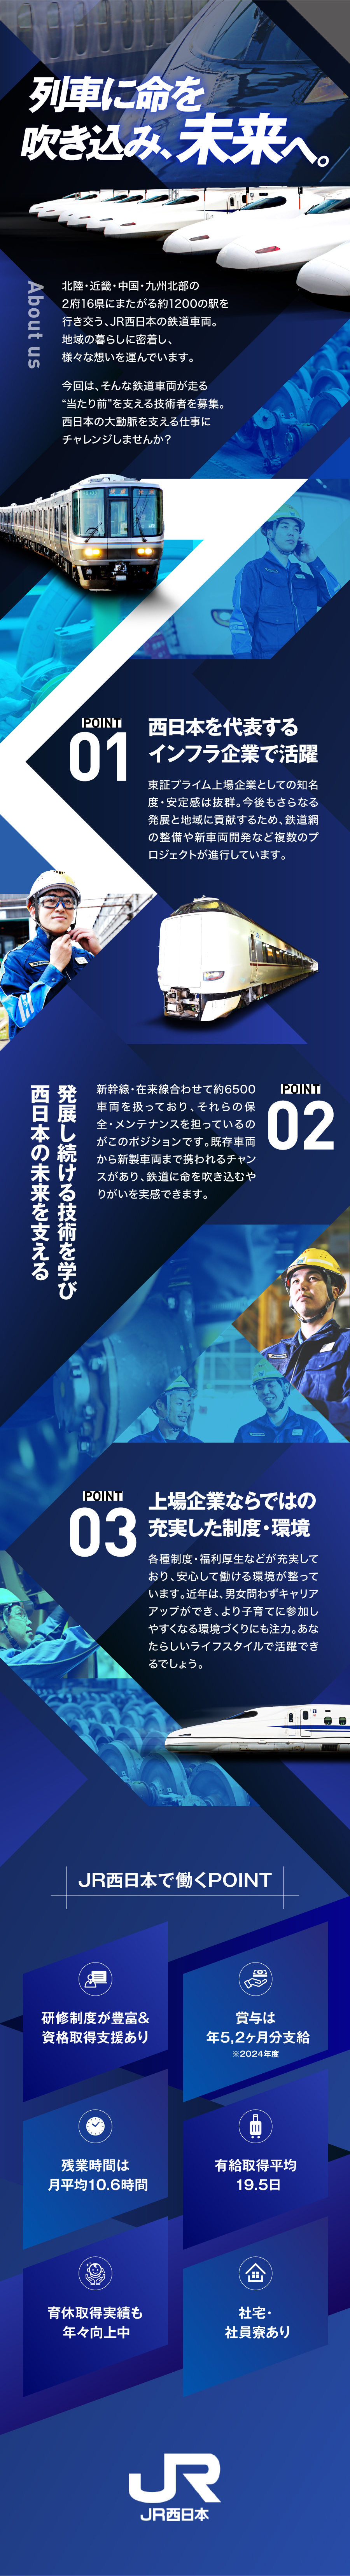 西日本旅客鉄道株式会社からのメッセージ